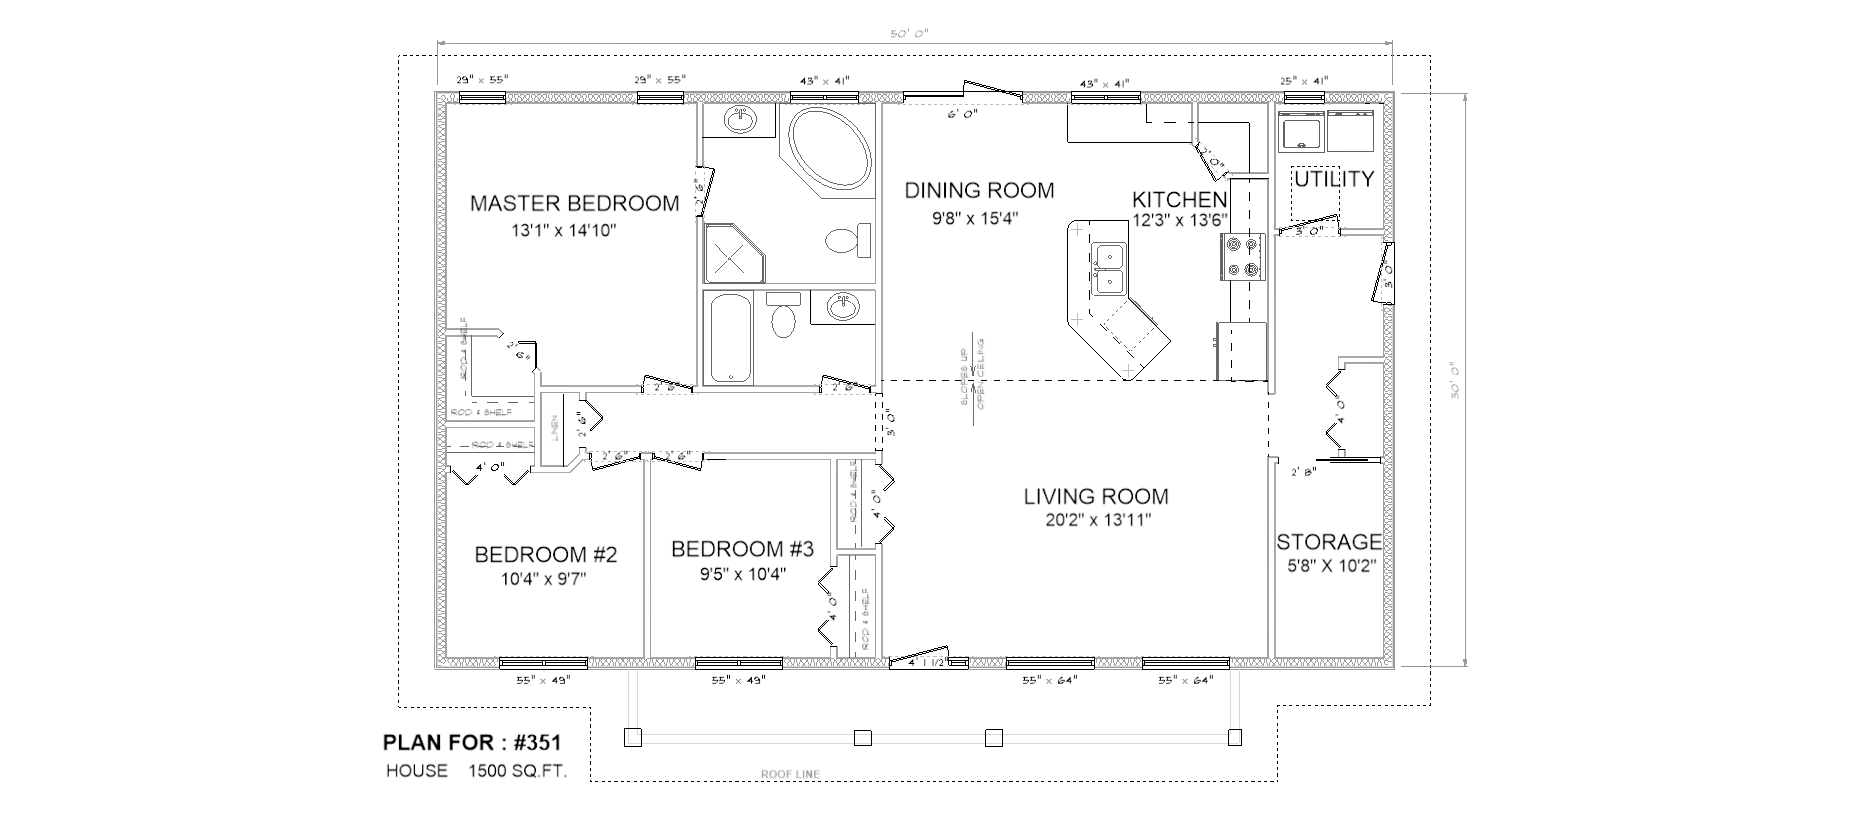 Penner Homes Floor Plan Id: 351